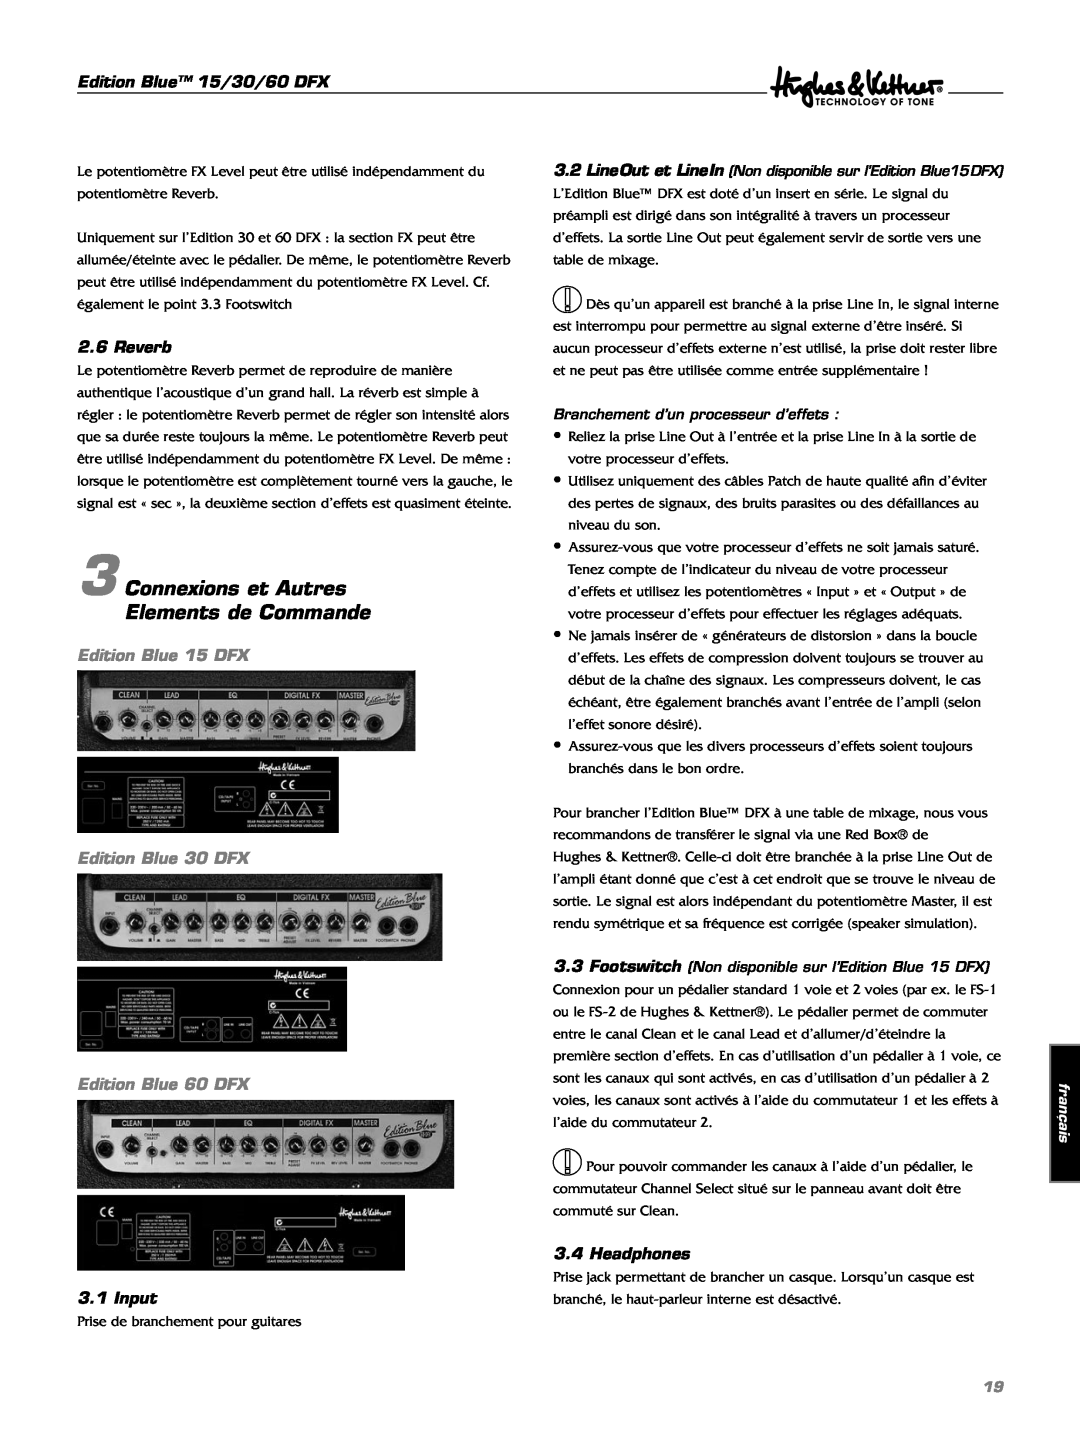 Hughes & Kettner manual Connexions et Autres Elements de Commande, Edition Blue 15 DFX Edition Blue 30 DFX, français 